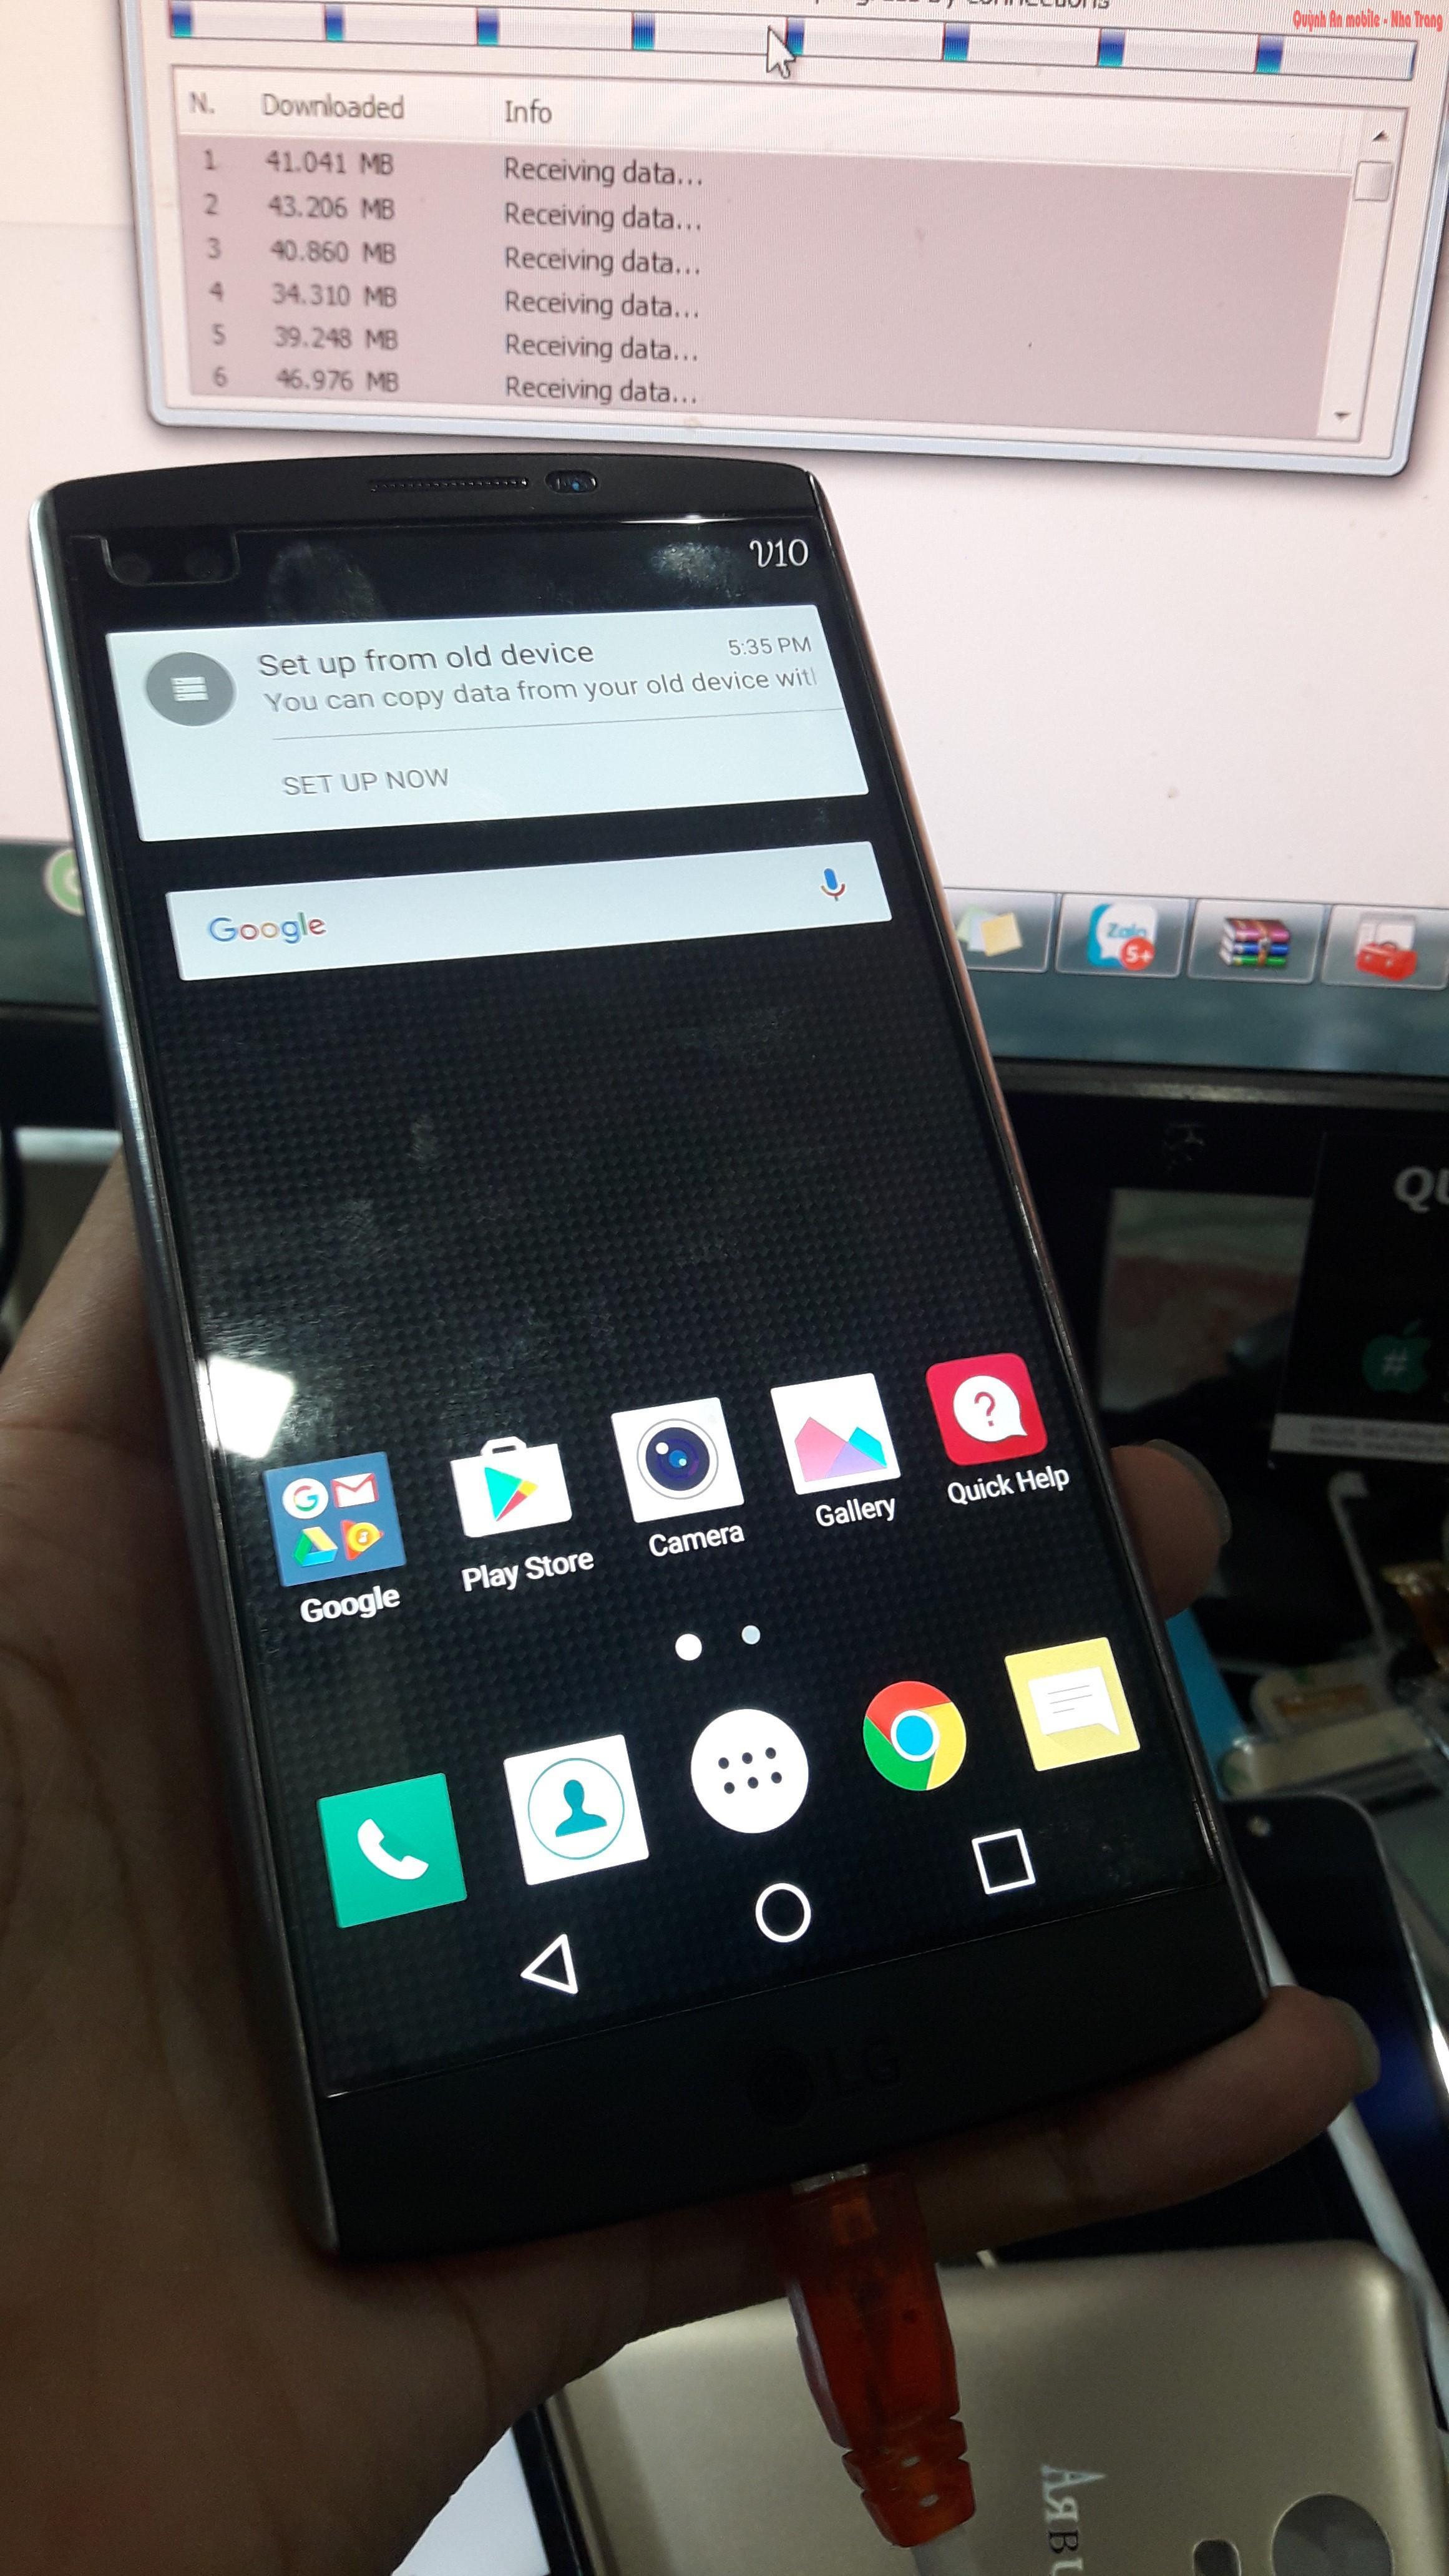 Xóa tài khoản Google cho LG V10 tại Nha Trang bằng thiết bị chuyên dụng, chờ lấy ngay.